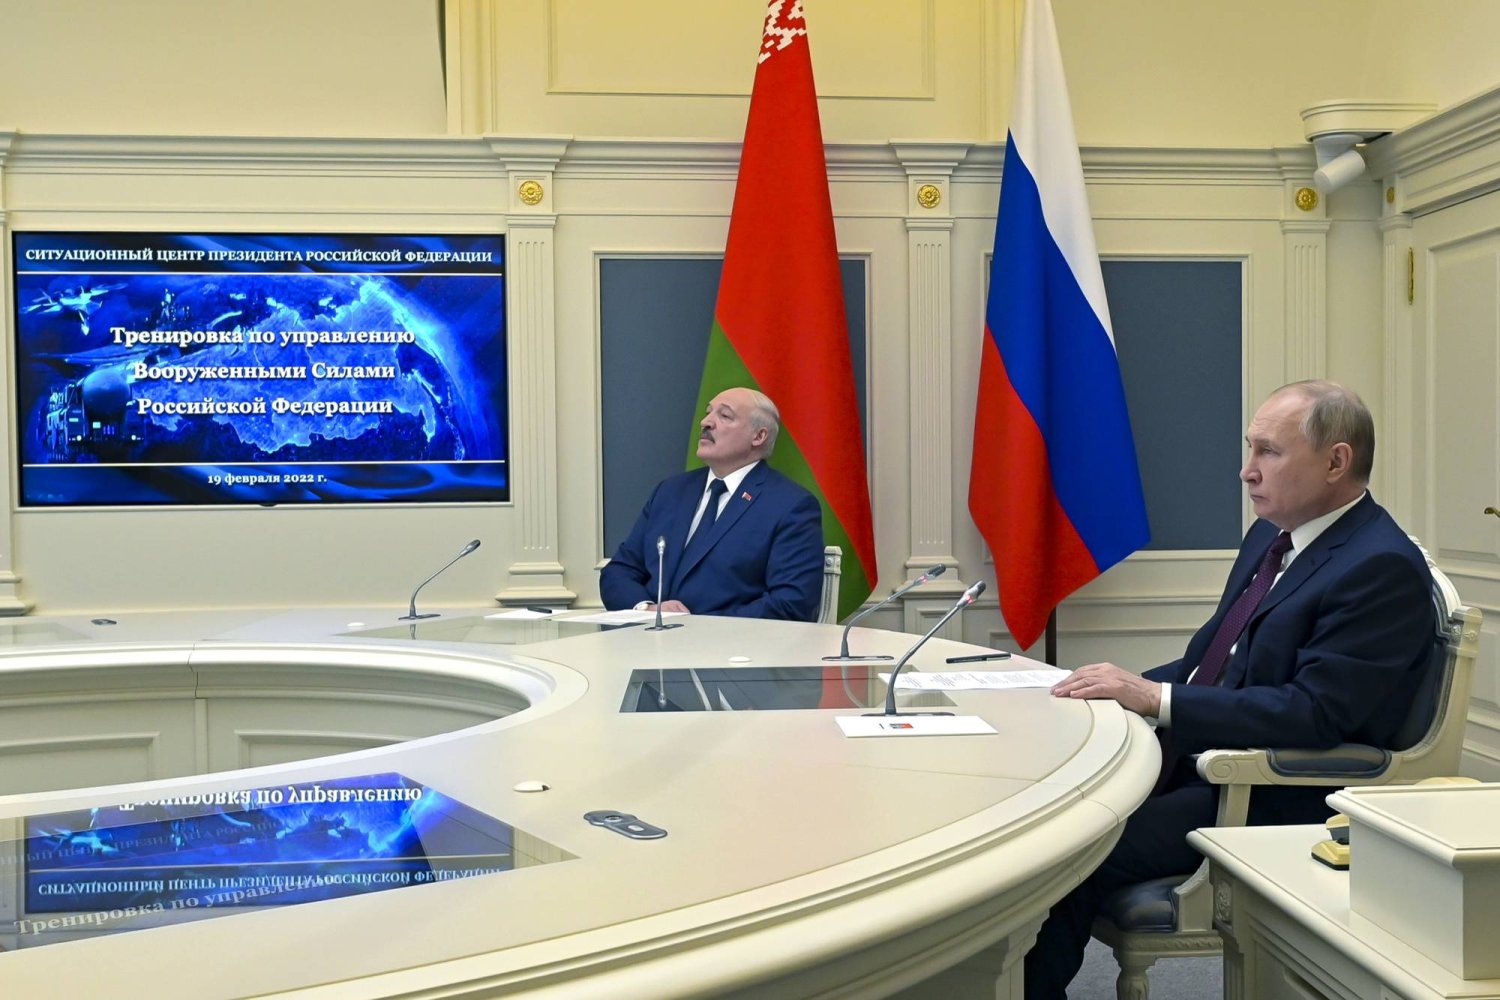 الرئيس الروسي فلاديمير بوتين وإلى يمينه رئيس بيلاروسيا ألكسندر لوكاشينكو يتابعان تدريبات عسكرية في موسكو (أرشيفية - أ.ب)